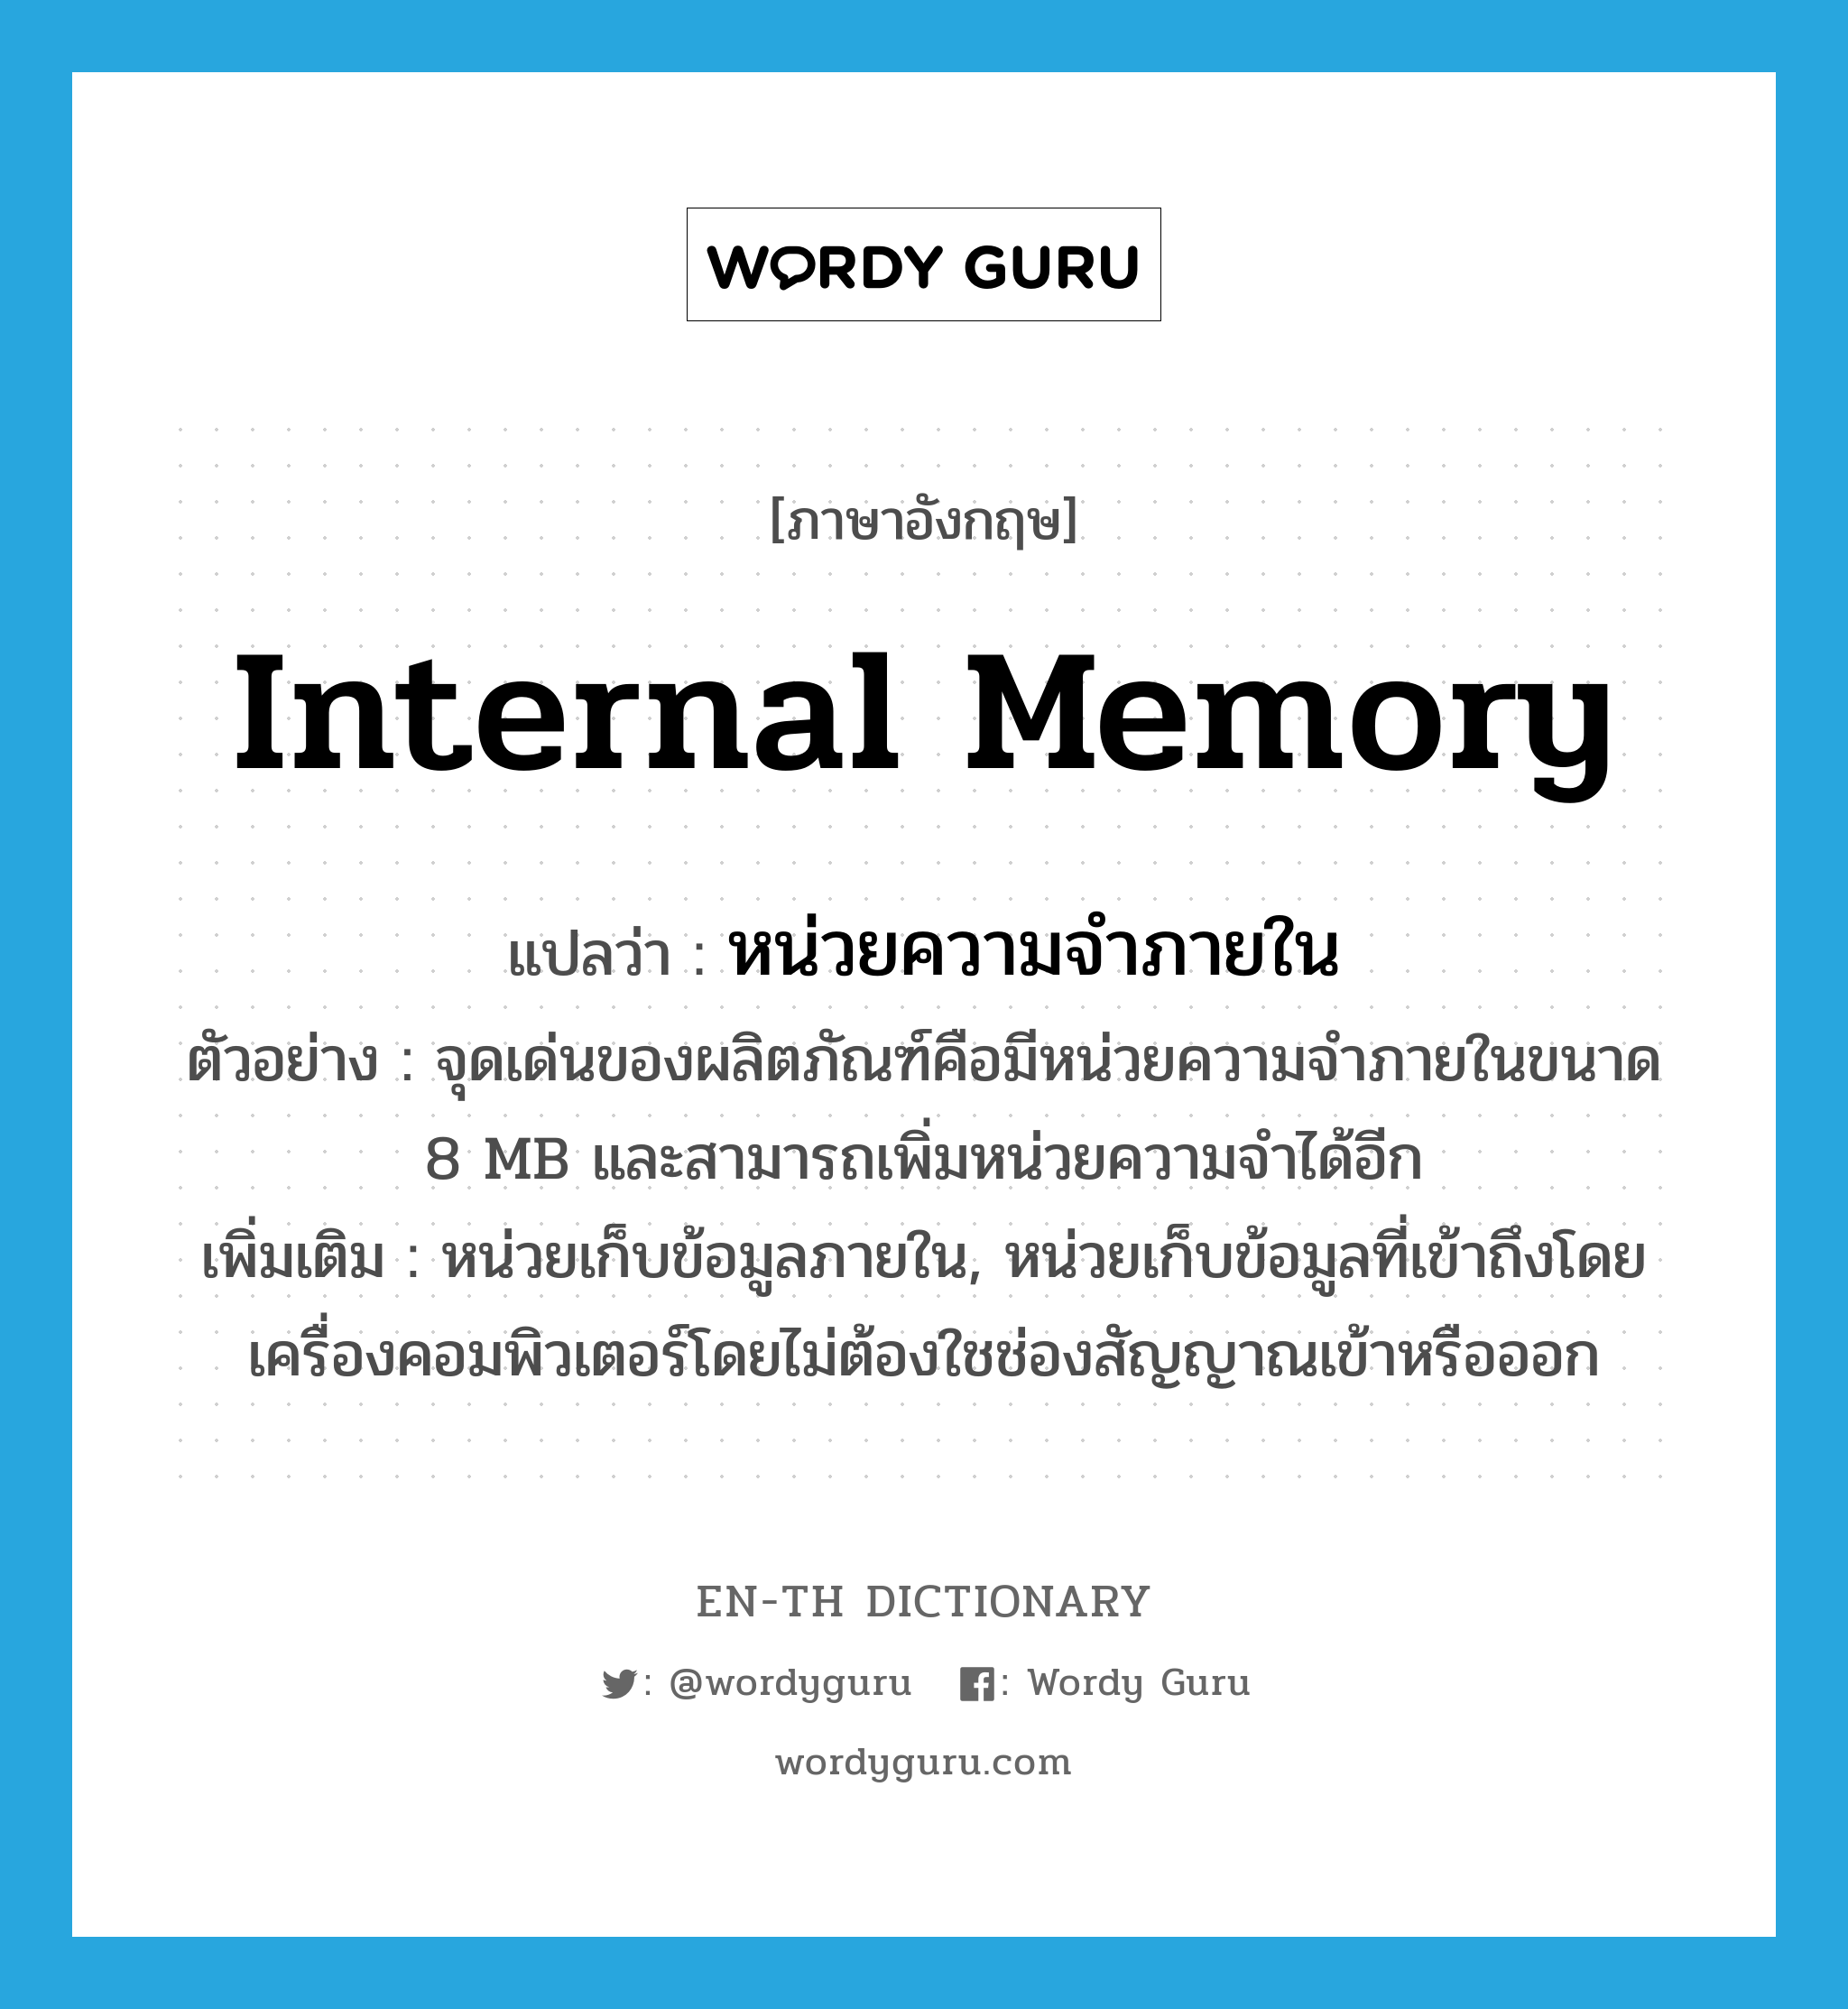 internal memory แปลว่า?, คำศัพท์ภาษาอังกฤษ internal memory แปลว่า หน่วยความจำภายใน ประเภท N ตัวอย่าง จุดเด่นของผลิตภัณฑ์คือมีหน่วยความจำภายในขนาด 8 MB และสามารถเพิ่มหน่วยความจำได้อีก เพิ่มเติม หน่วยเก็บข้อมูลภายใน, หน่วยเก็บข้อมูลที่เข้าถึงโดยเครื่องคอมพิวเตอร์โดยไม่ต้องใชช่องสัญญาณเข้าหรือออก หมวด N